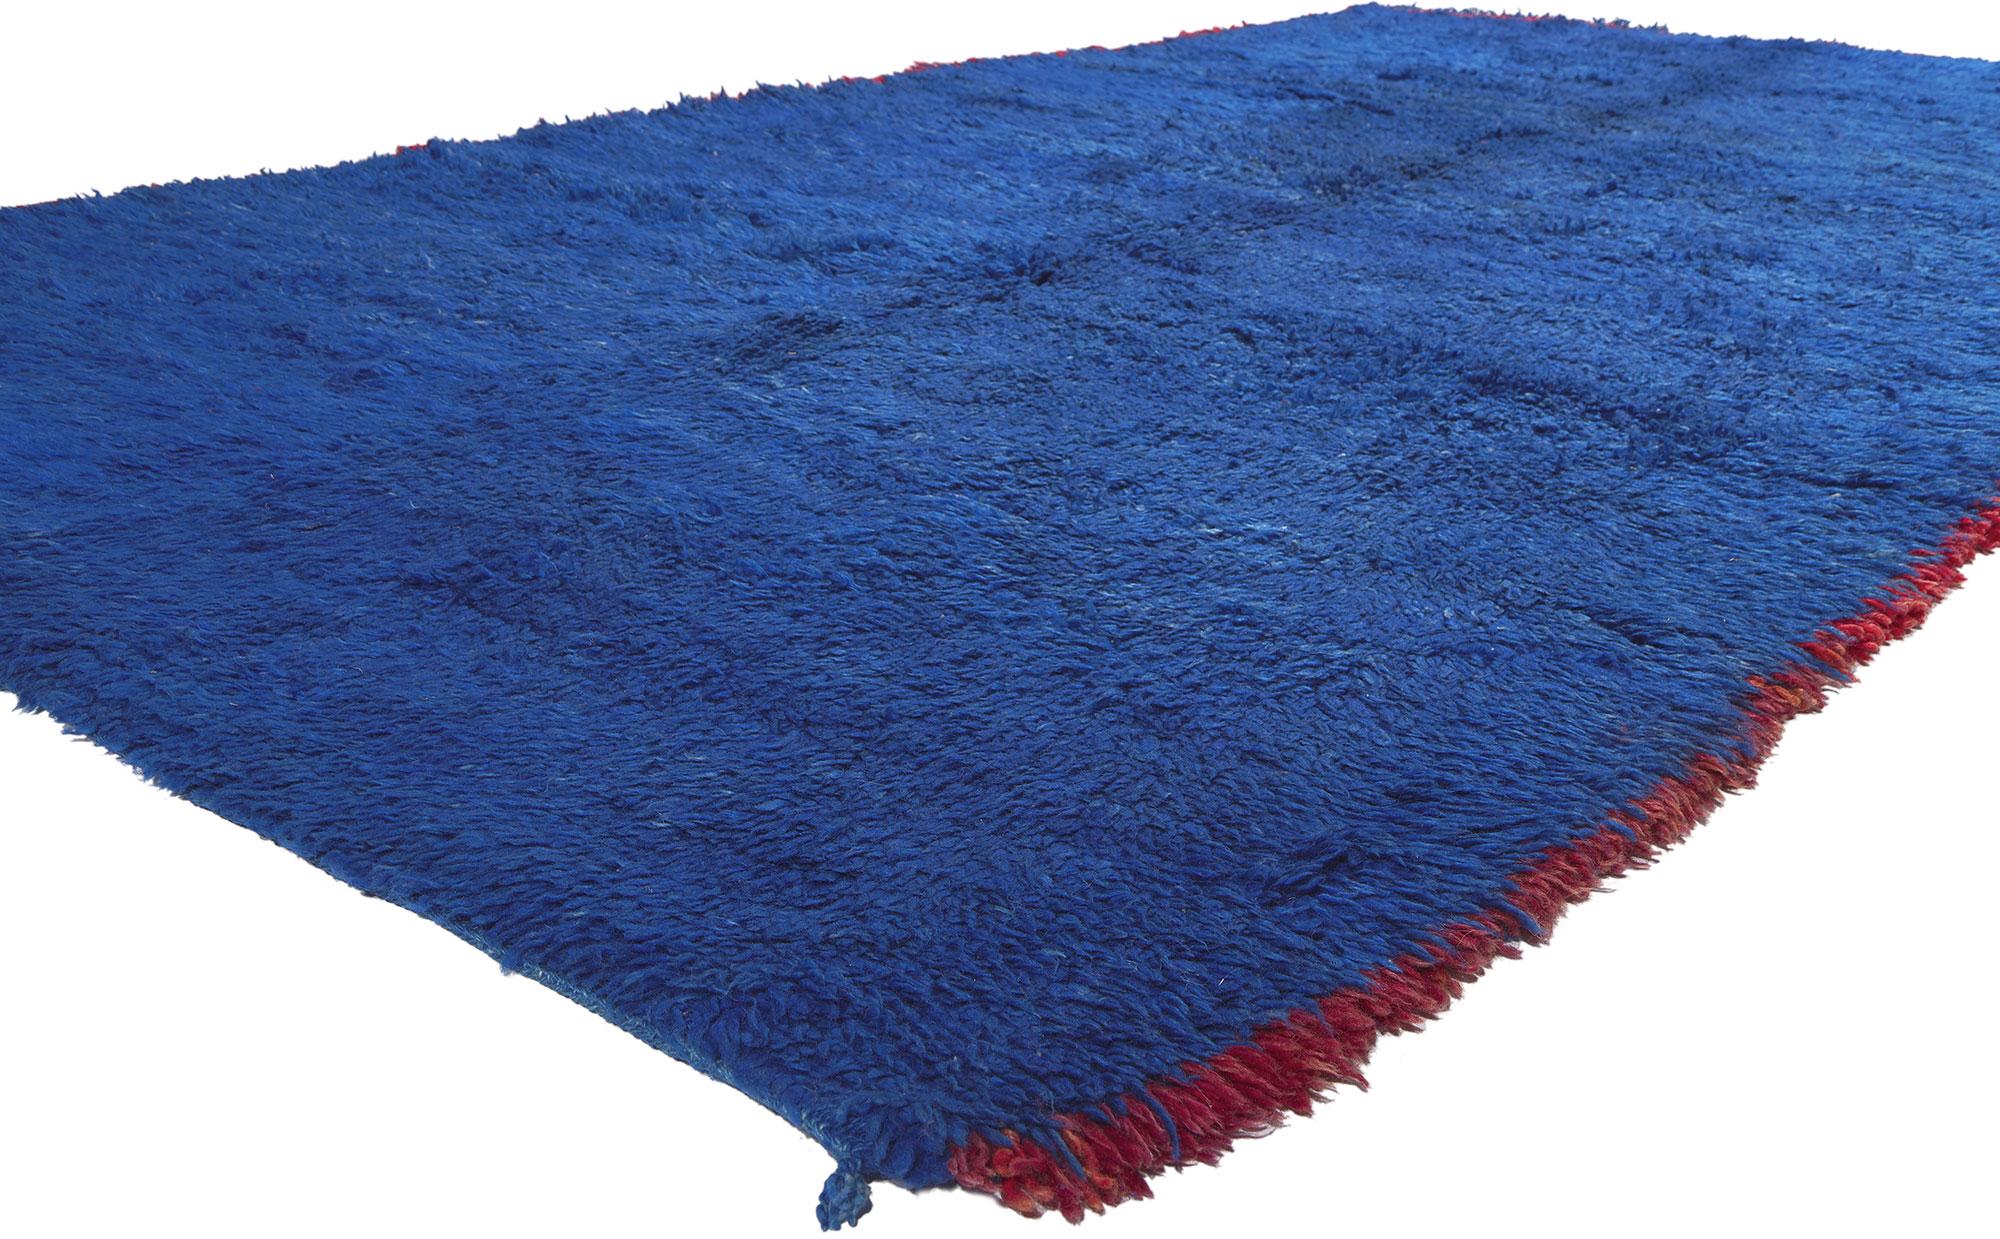 20643 Tapis marocain Beni MGuild bleu vintage, 06'08 x 12'07. Dans le monde serein de l'esthétique Shibui, voici ce tapis marocain Beni Rugs bleu vintage en laine nouée à la main - un chef-d'œuvre du Moyen Atlas central occidental, méticuleusement